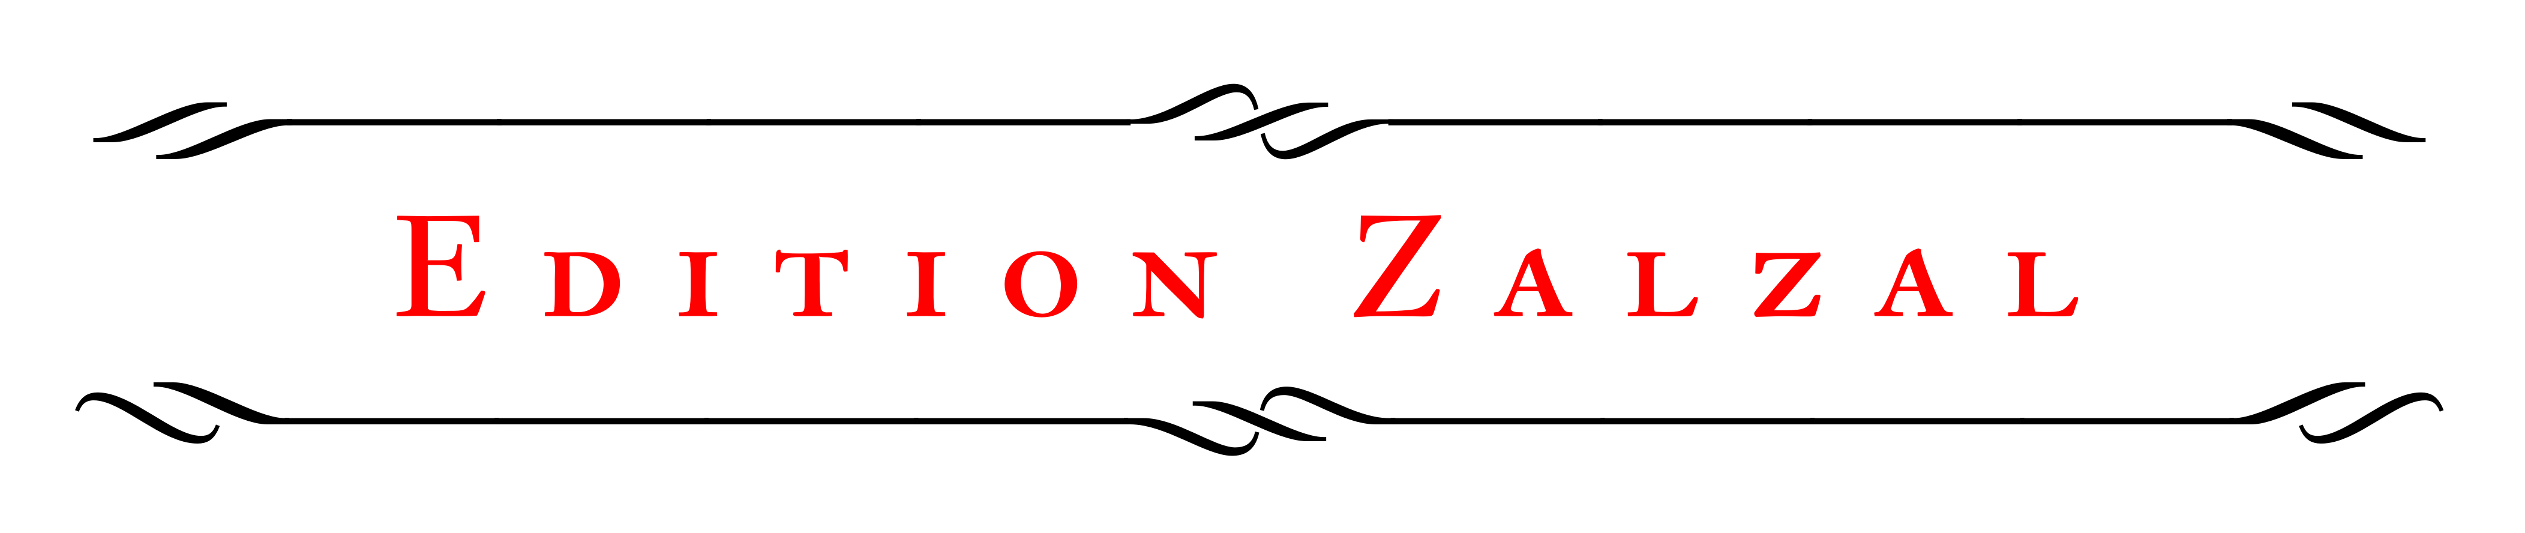 Edition Zalzal logo